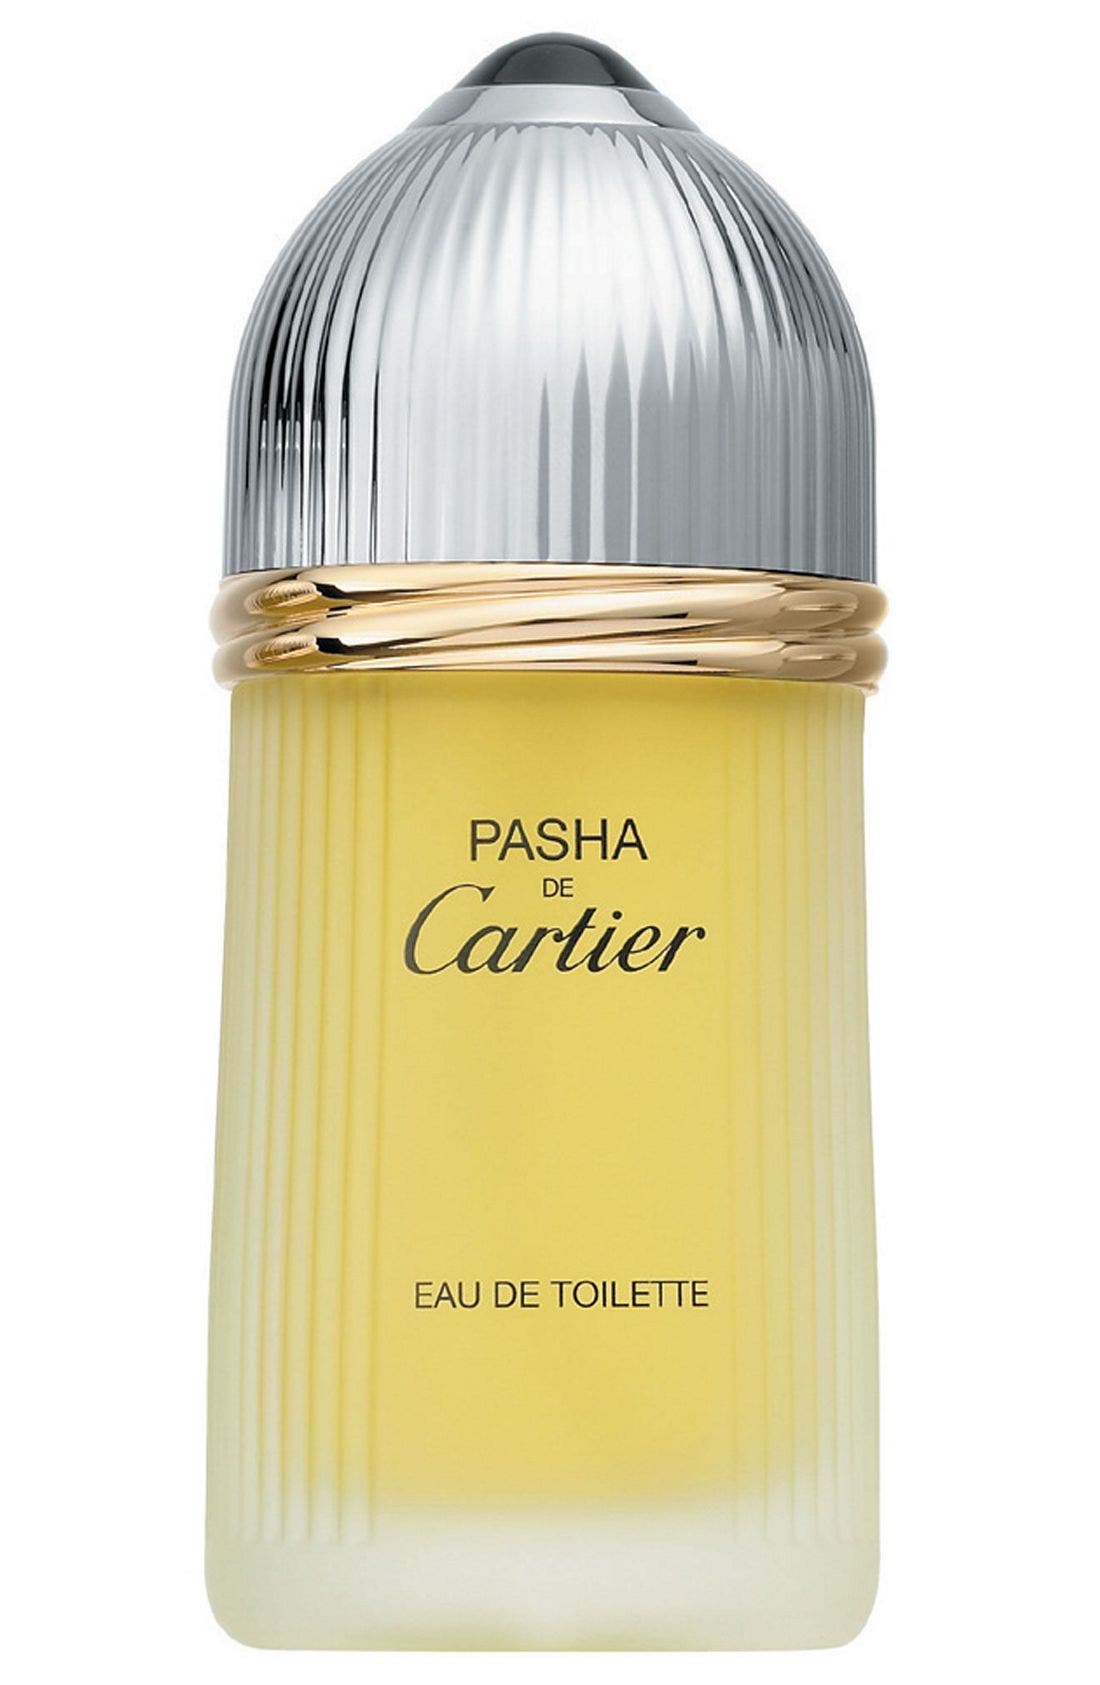 Pasha de Cartier Eau de Toilette at Nordstrom, Size 1.6 Oz